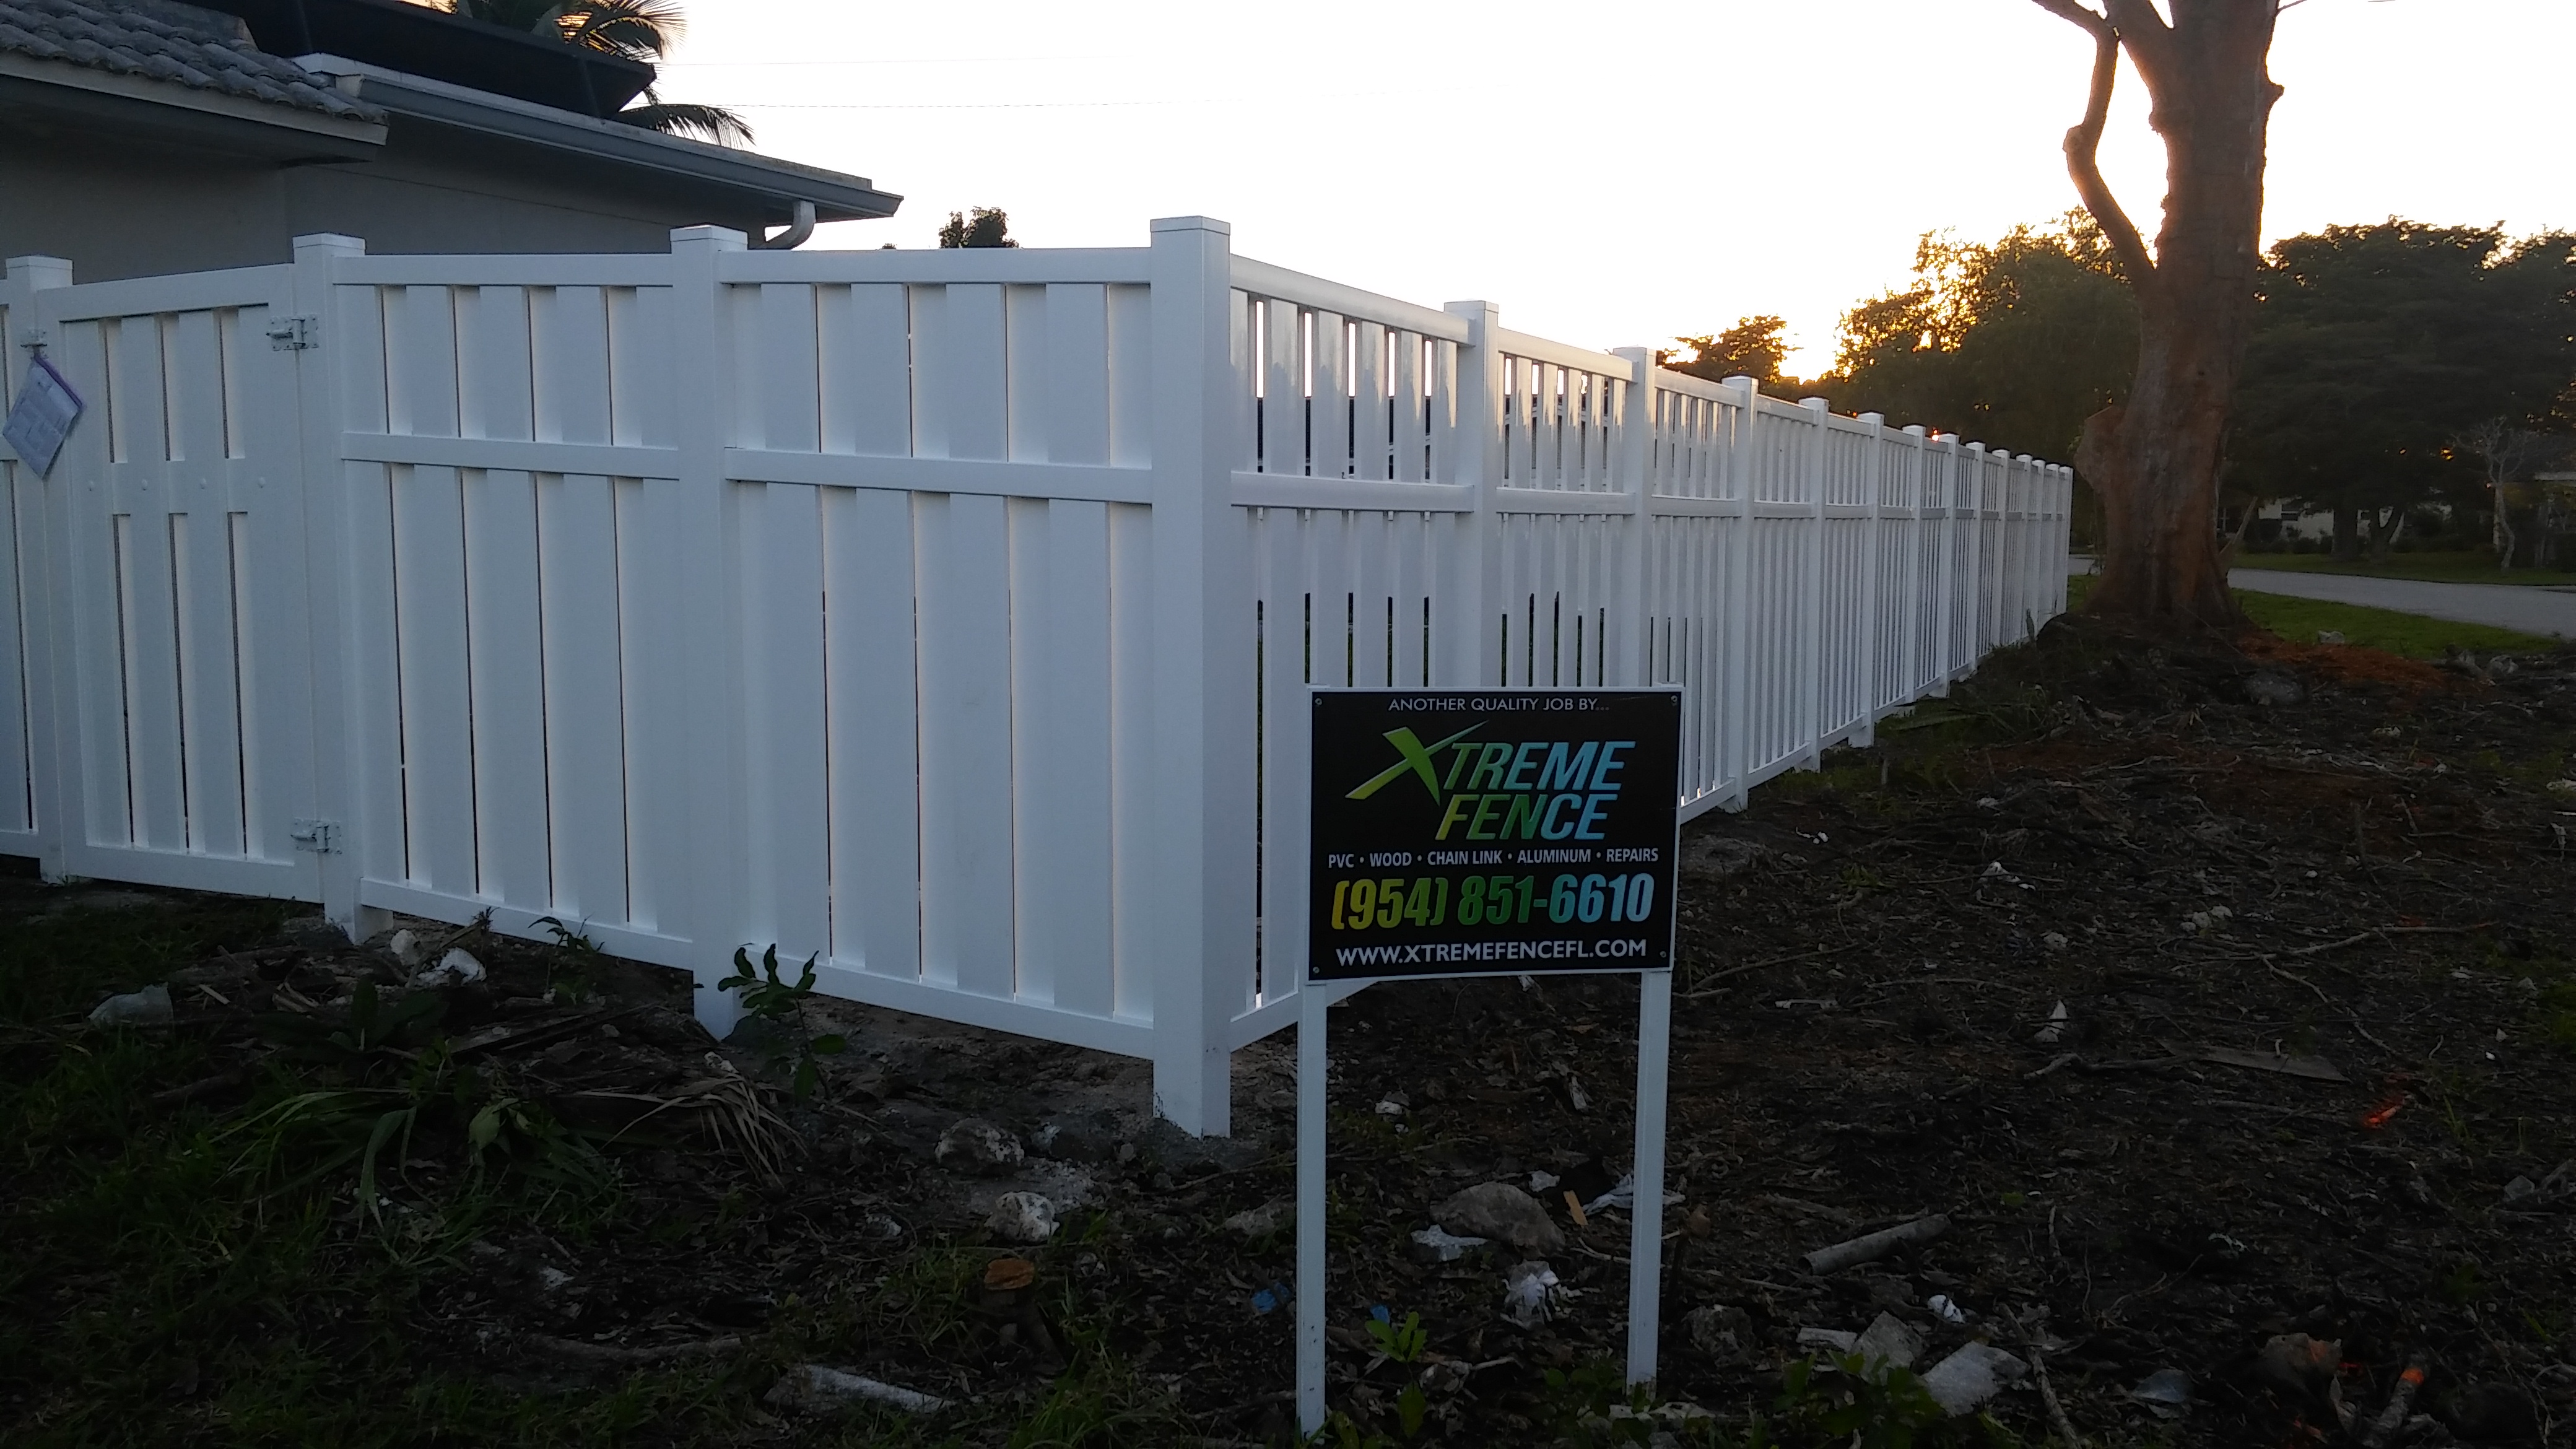 Xtreme Fence of Florida, Inc. Logo